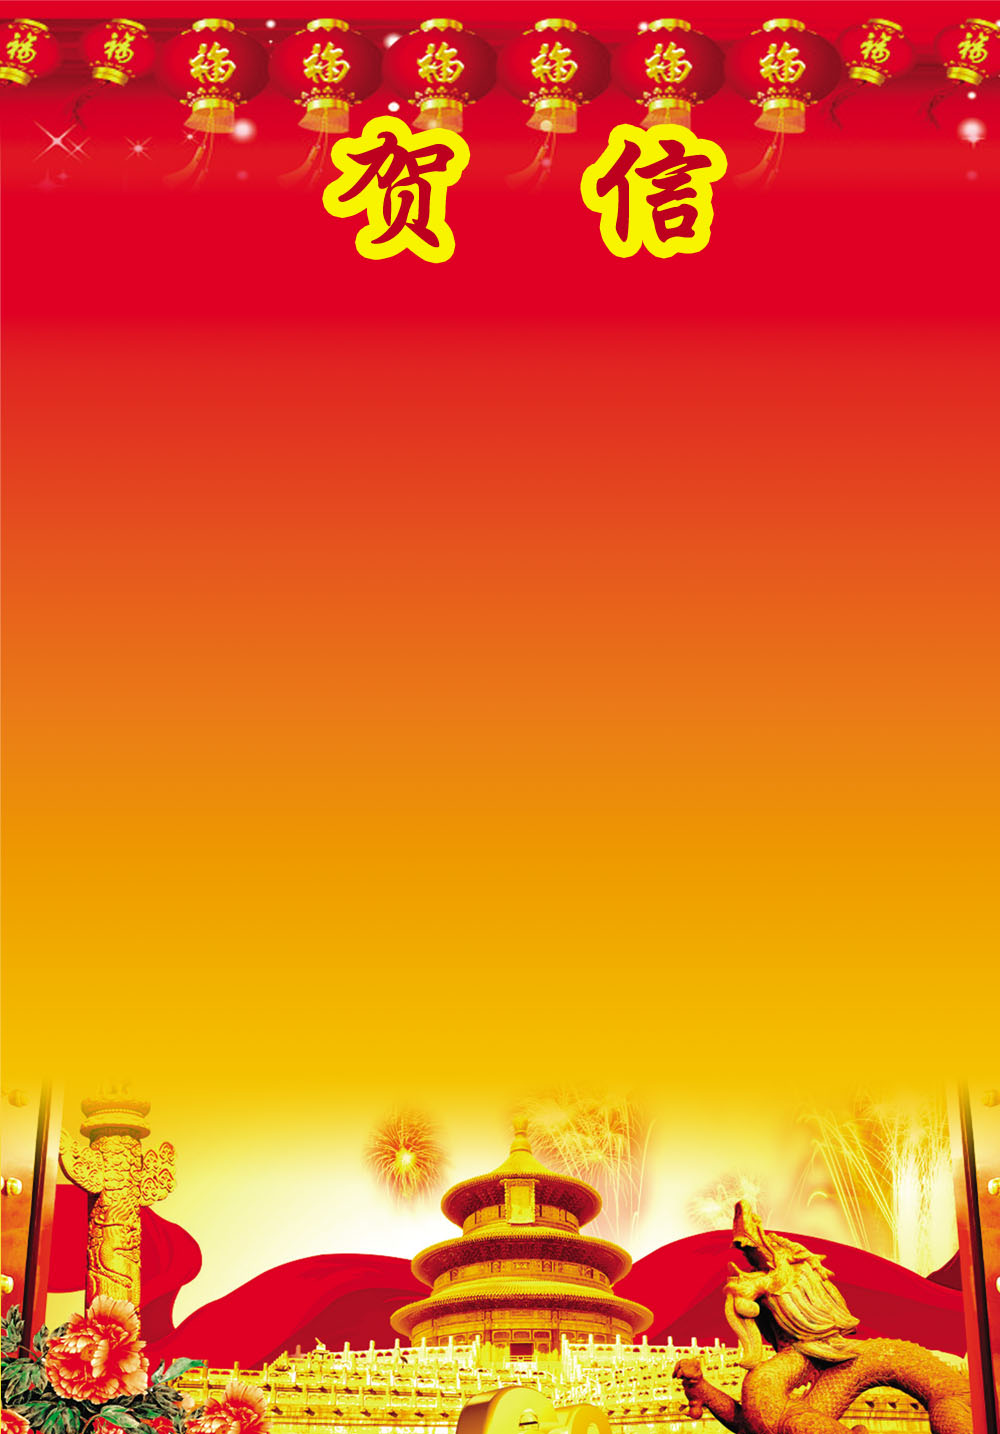 762海报印制展板写真素材705贺信慰问信光荣榜好消息背景模版